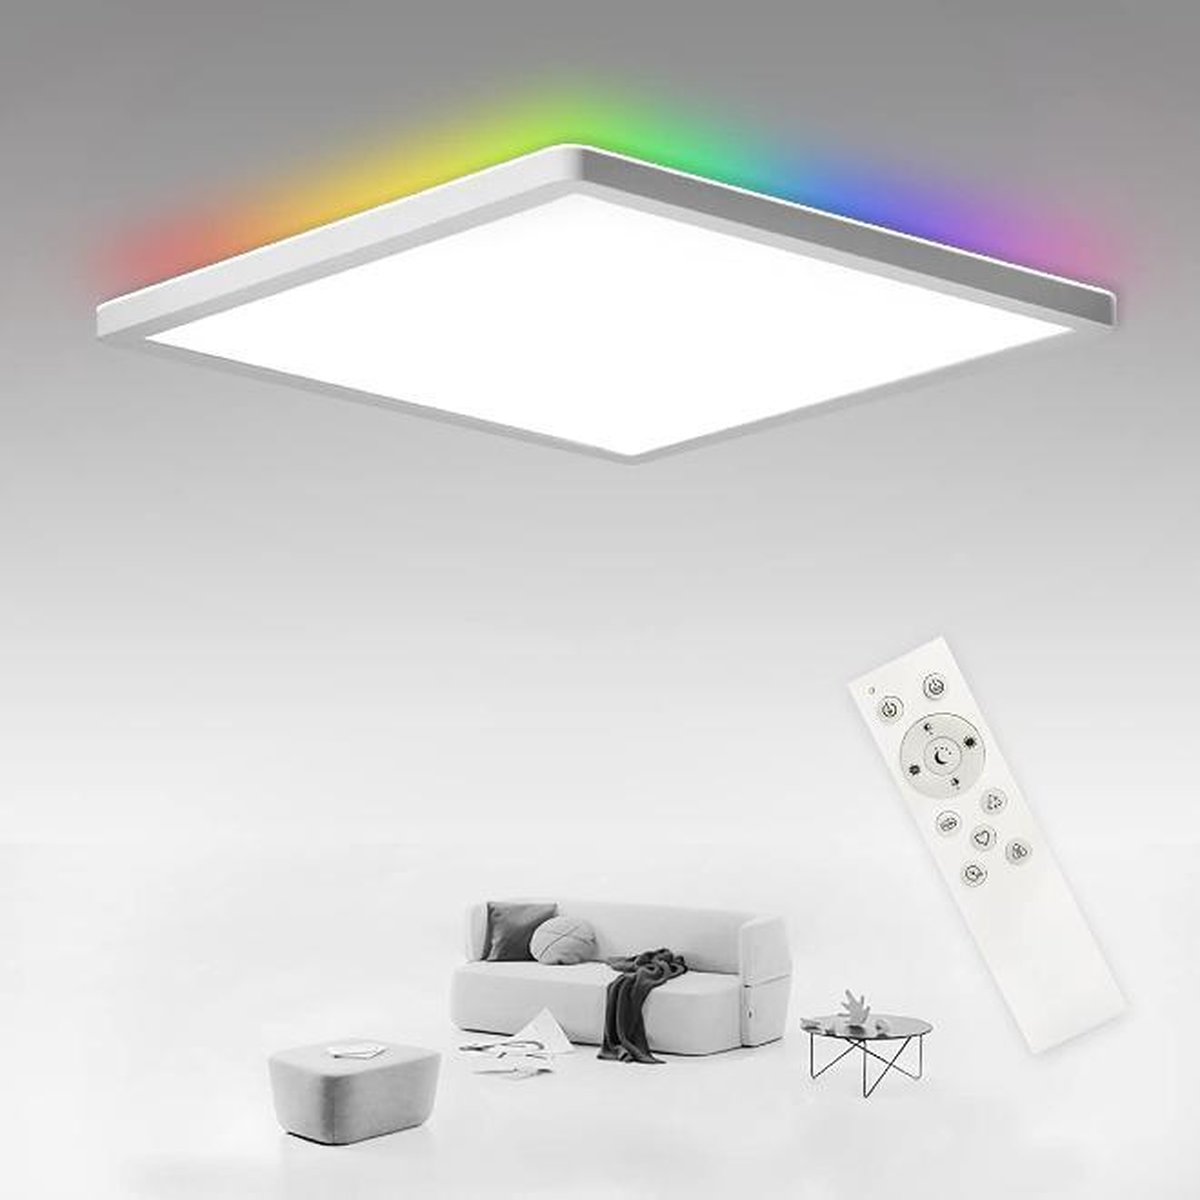 Plafonnier LED Dimmable, 24W+8W Plafonnier Rétro-éclairé RGB